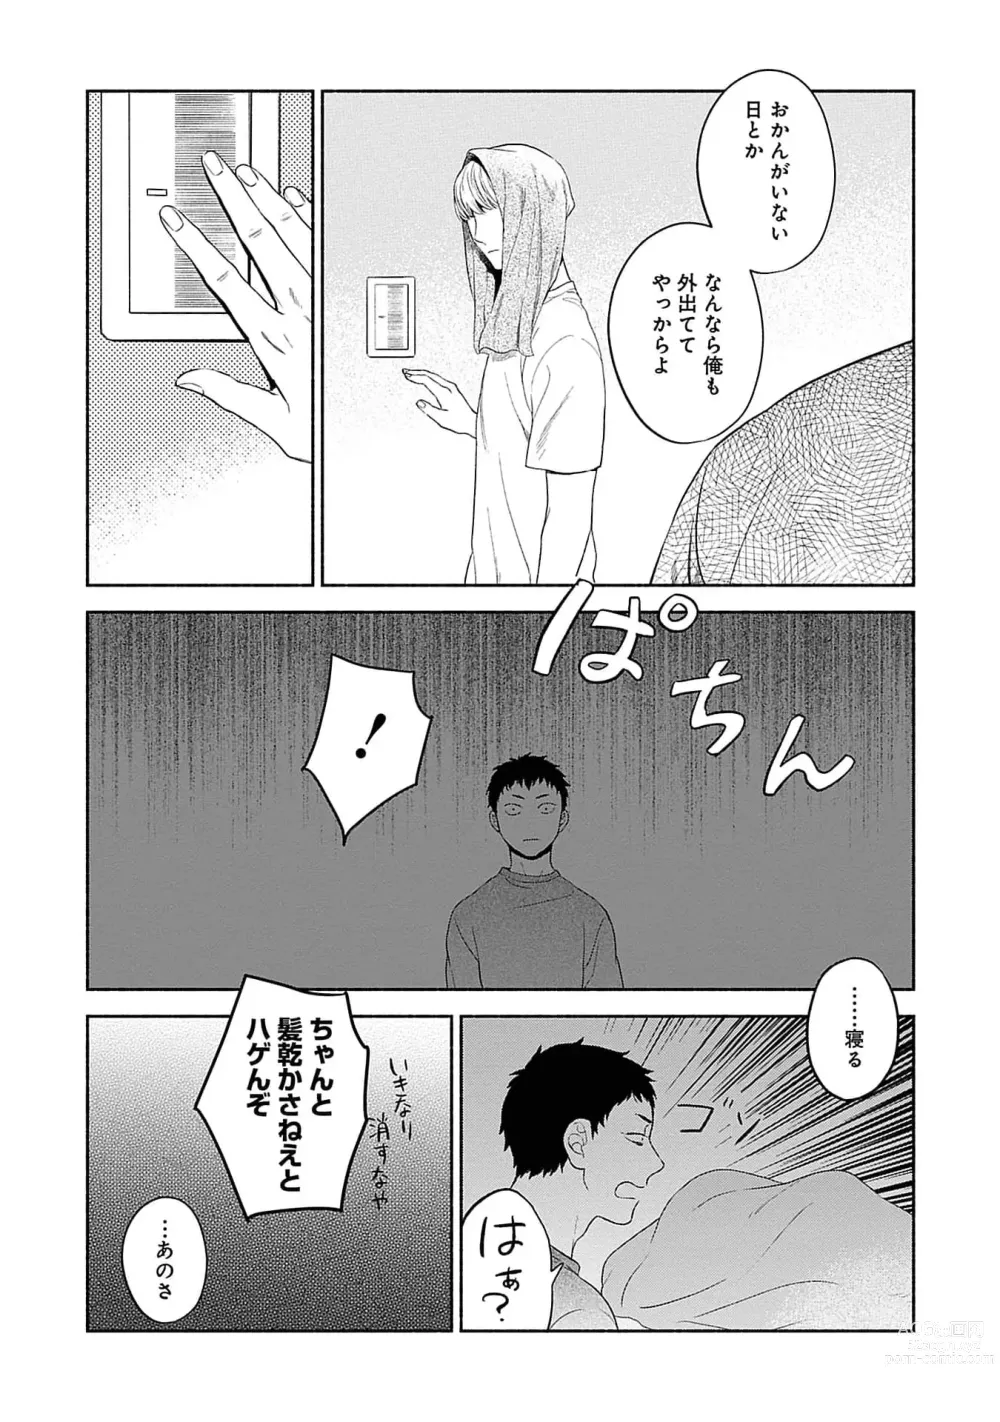 Page 13 of manga Yoru no Kyoudai